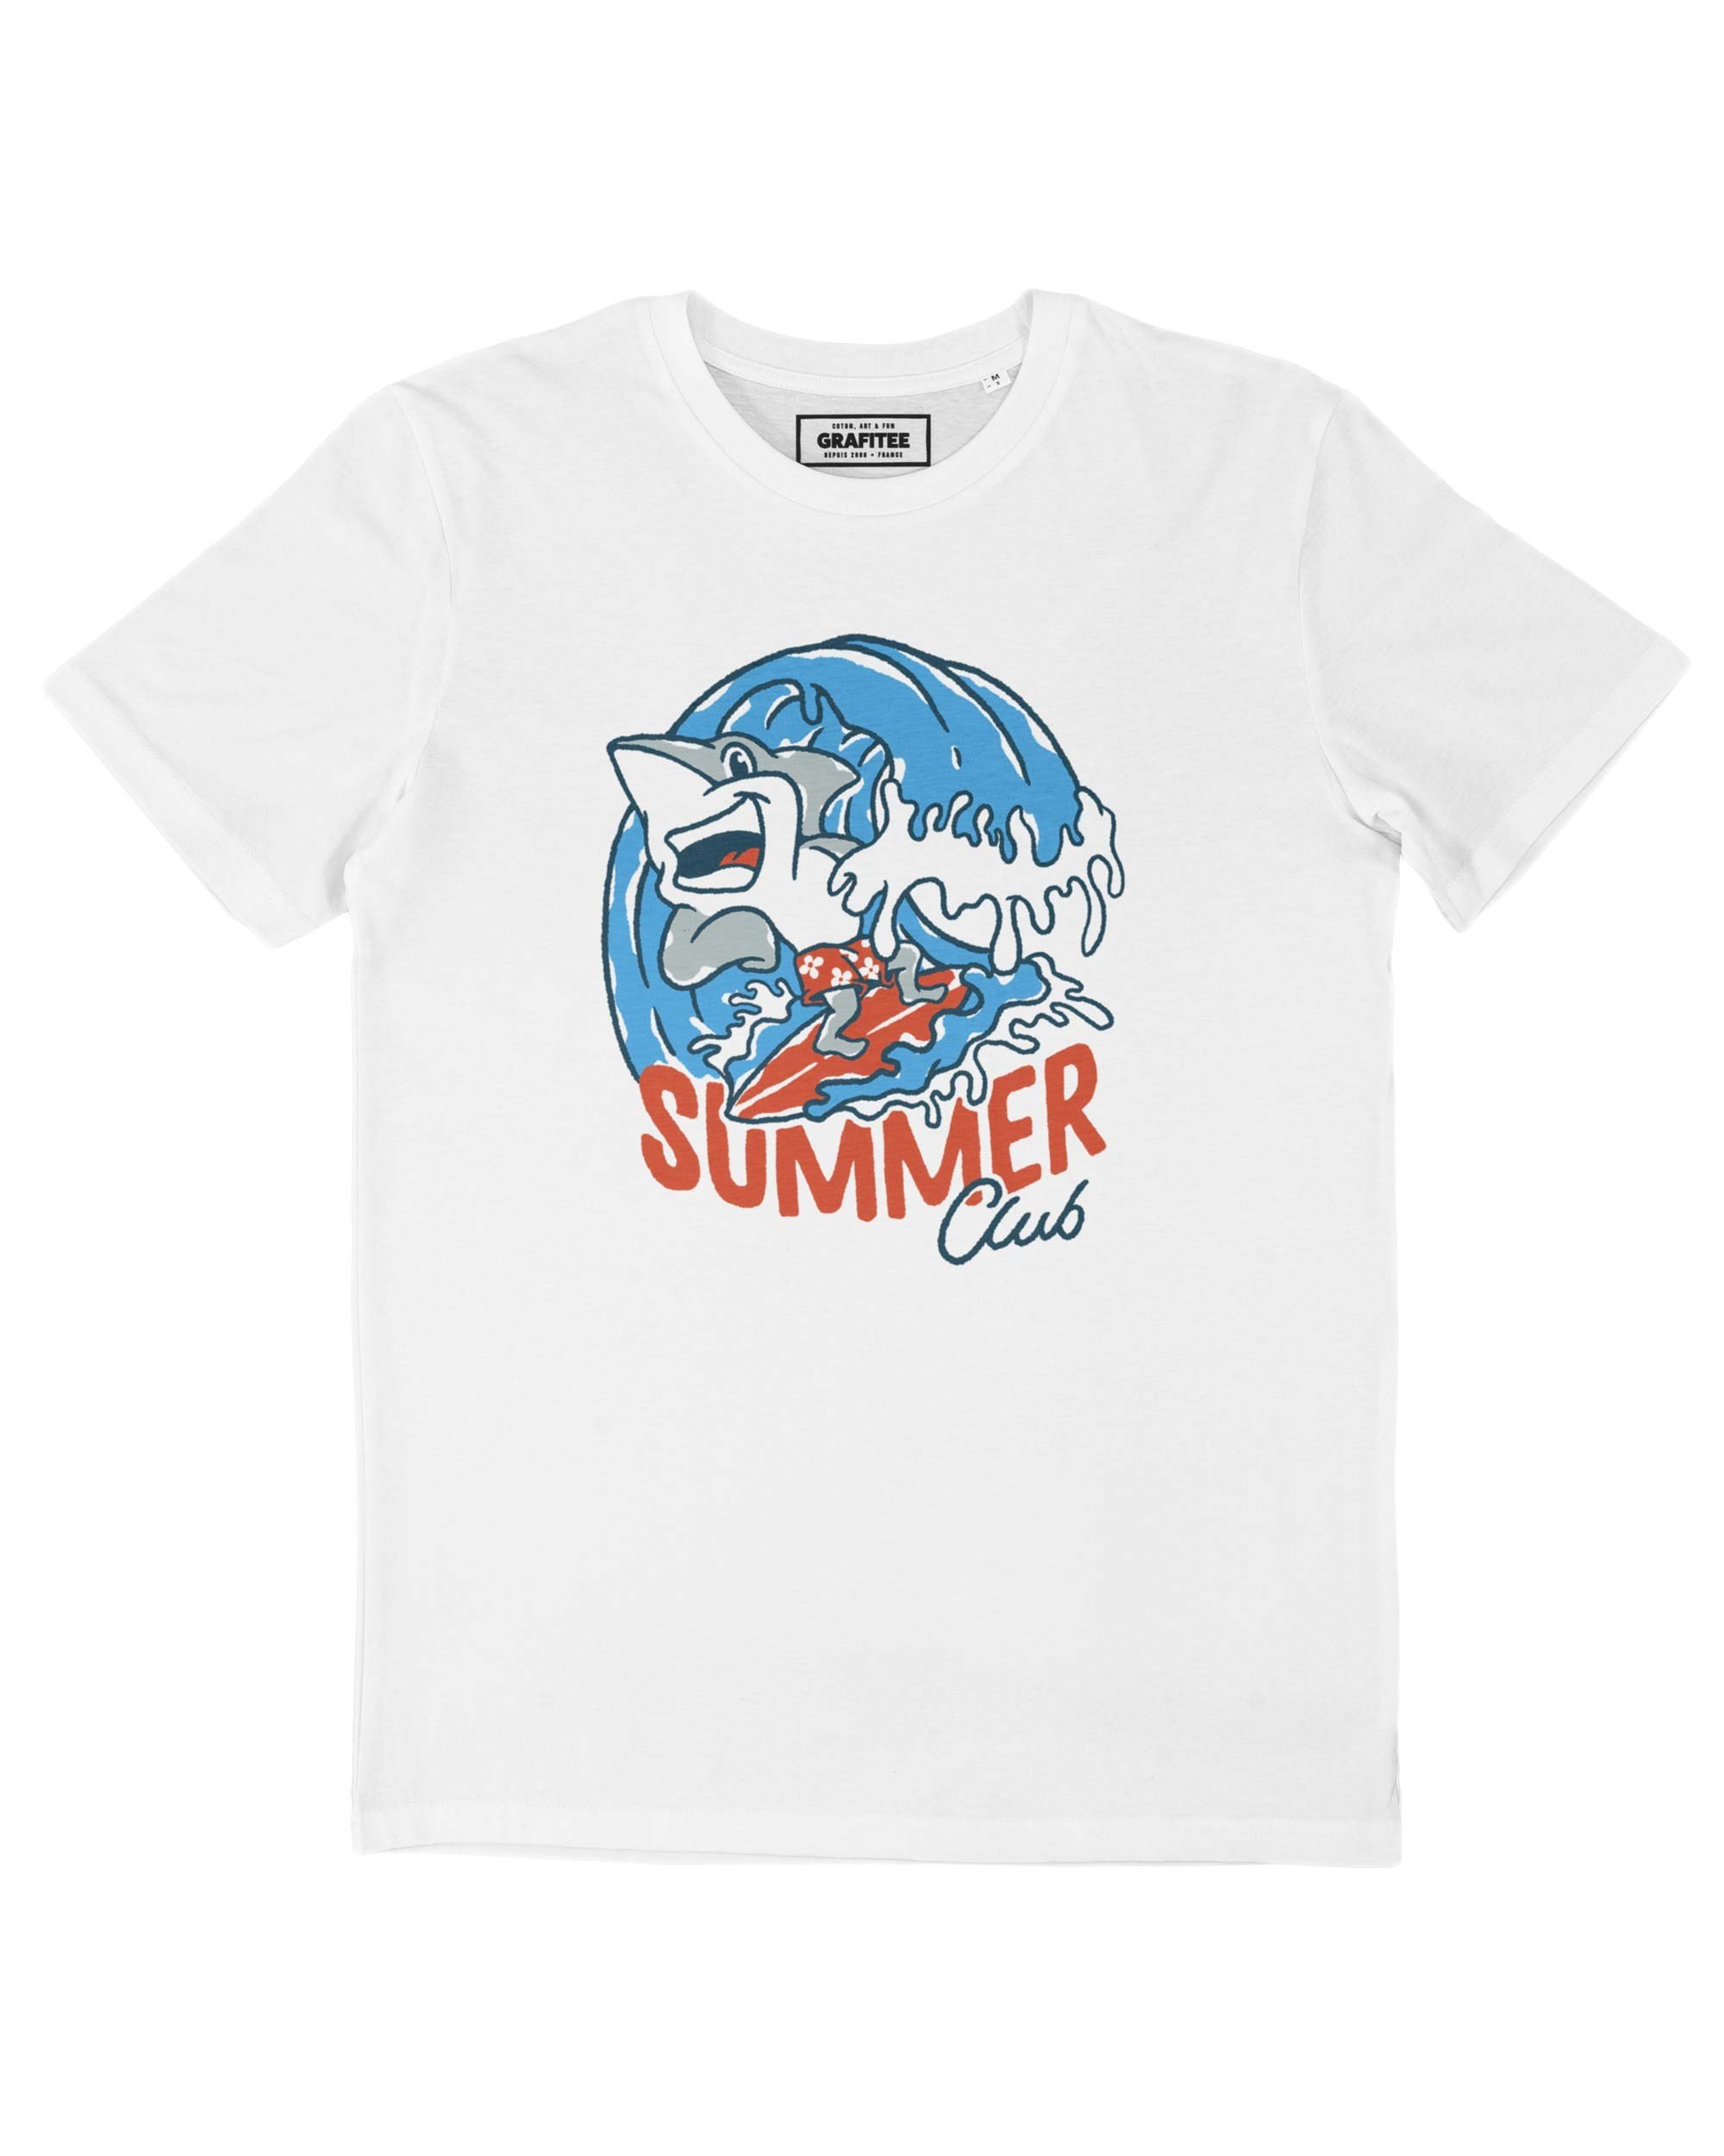 T-shirt Shark Summer Club Grafitee